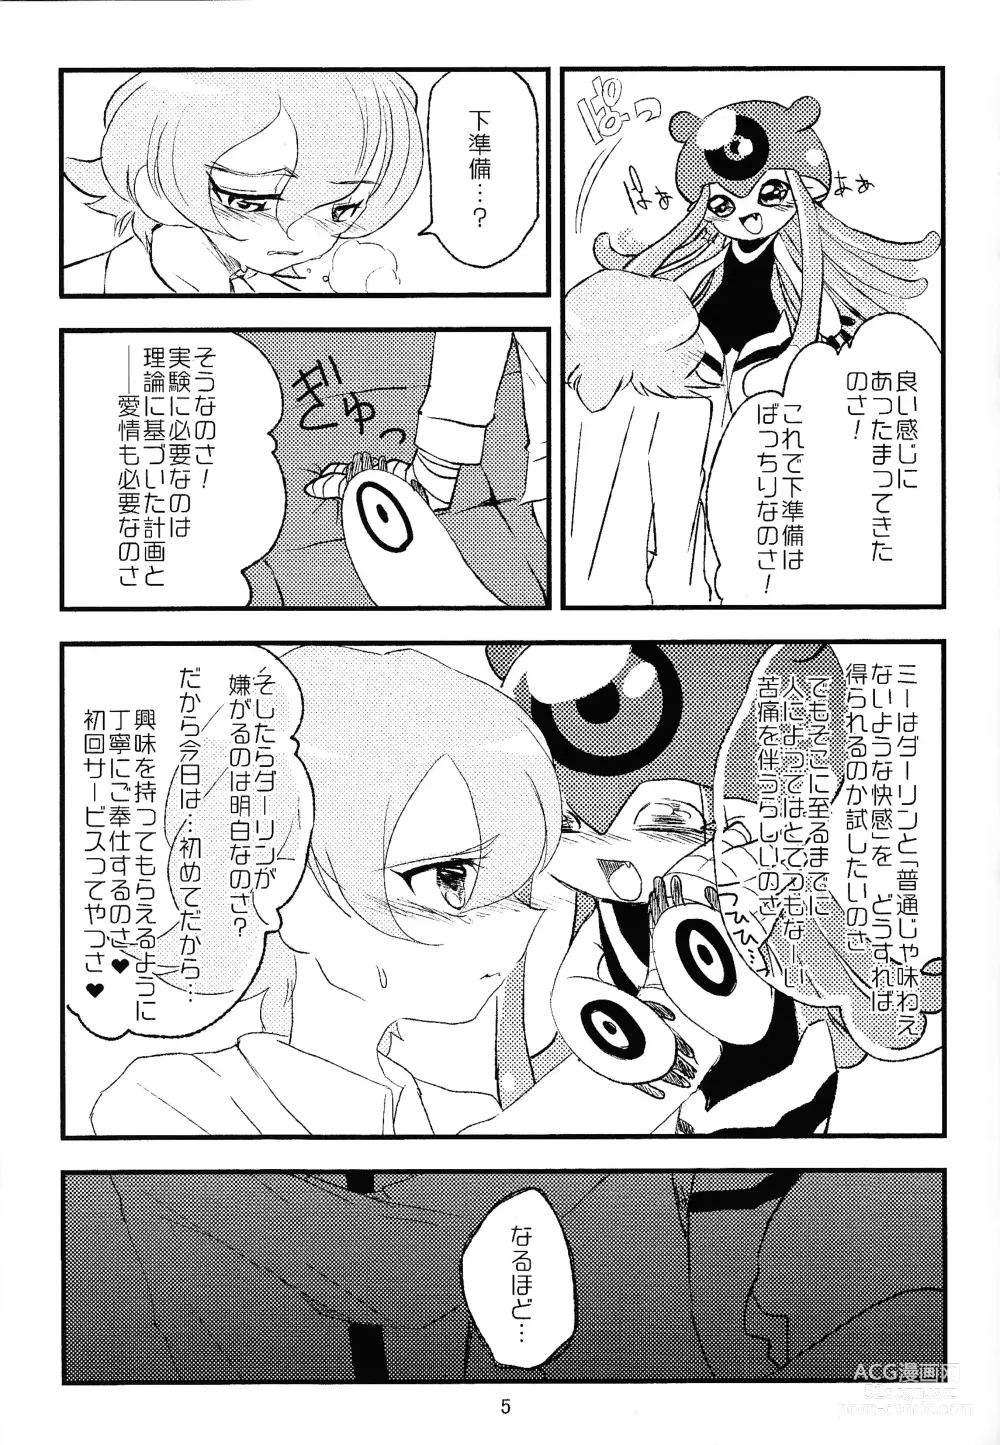 Page 6 of doujinshi Chusei kokoro ikusei gairon 1